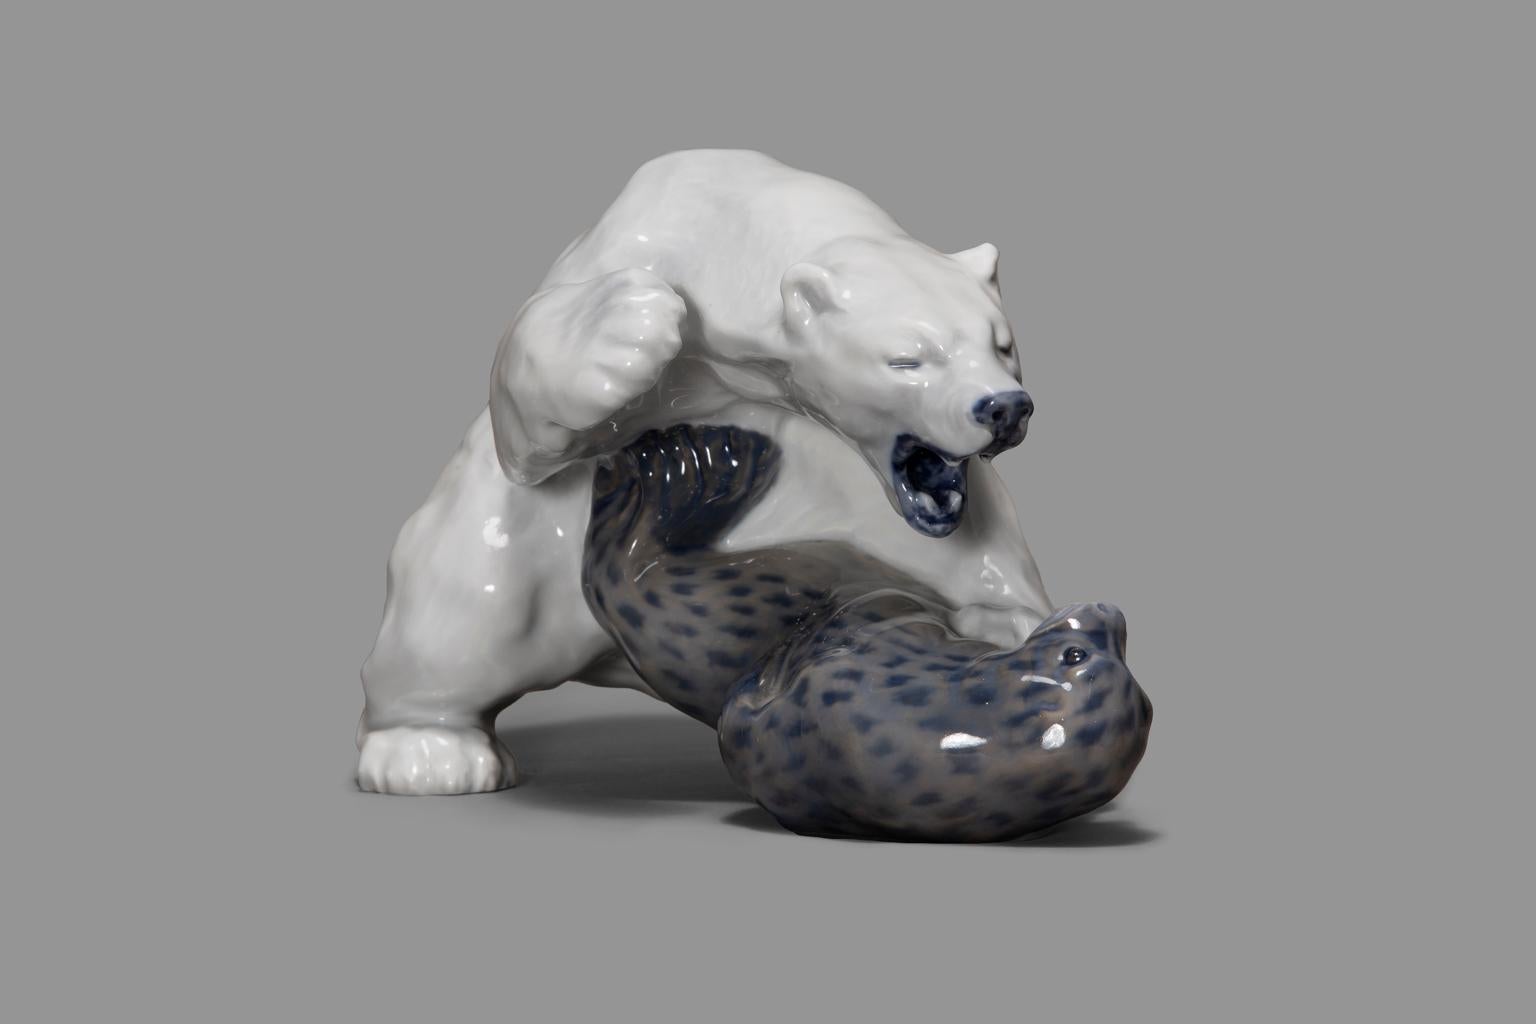 L'ours polaire et le phoque de Royal Copenhagen ont été dessinés par Knud Carl Edvard Kyhn vers 1908/9 et sont des figurines en porcelaine très populaires depuis 1108.

Knud Carl Edvard Kahn (1880 - 1969) était un peintre, dessinateur et sculpteur